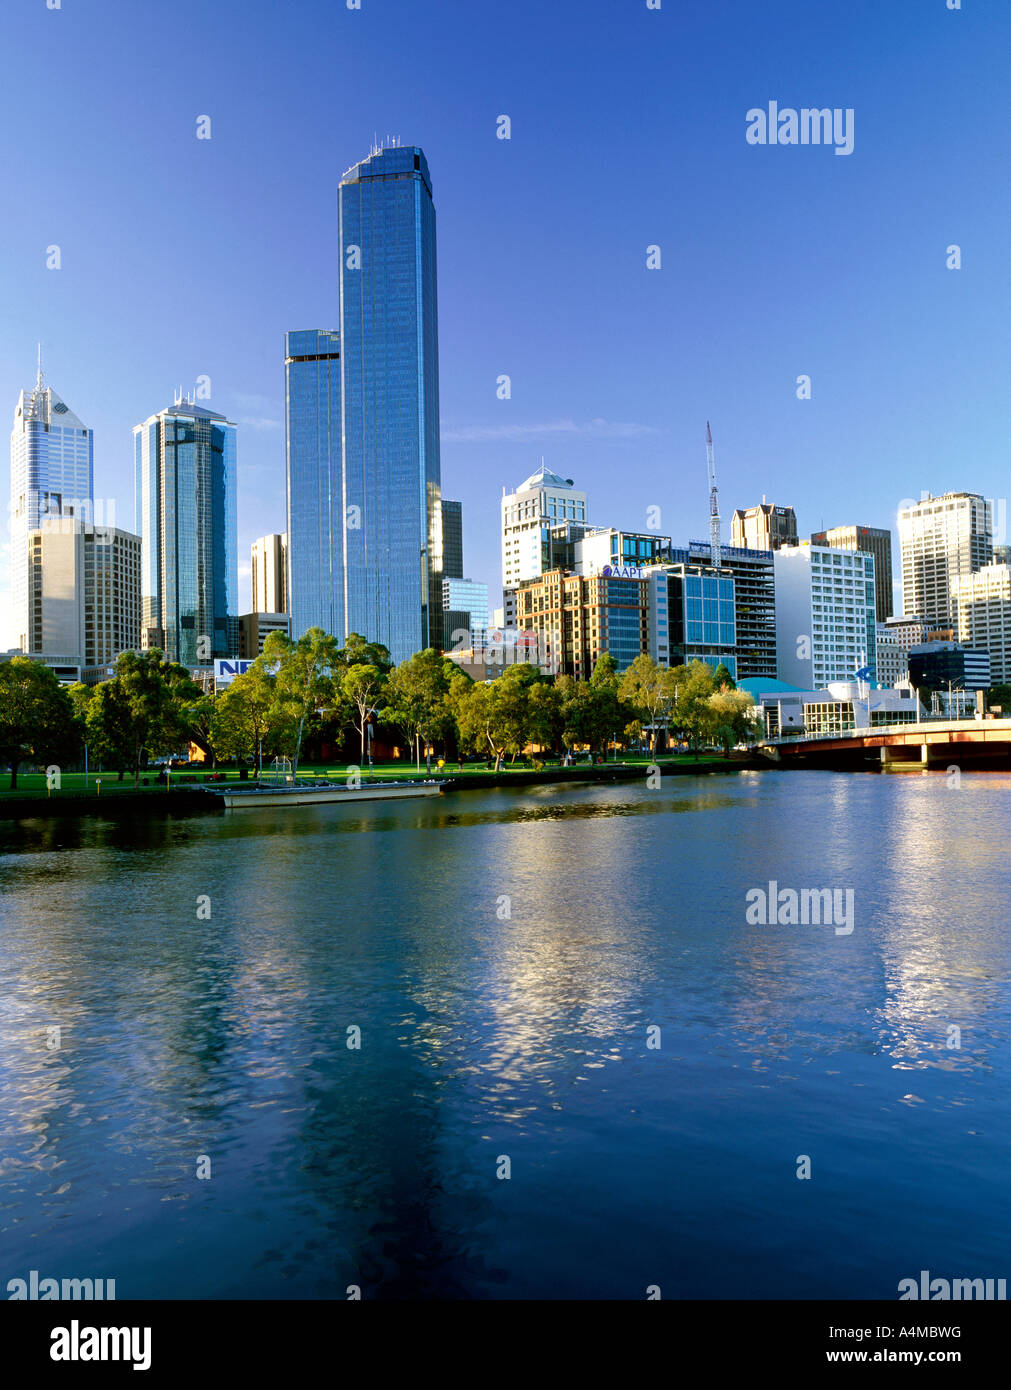 Le CBD de Melbourne vu de l'autre côté de la rivière Yarra, dans l'État australien de Victoria. Tourné en 6X7 de film. Banque D'Images